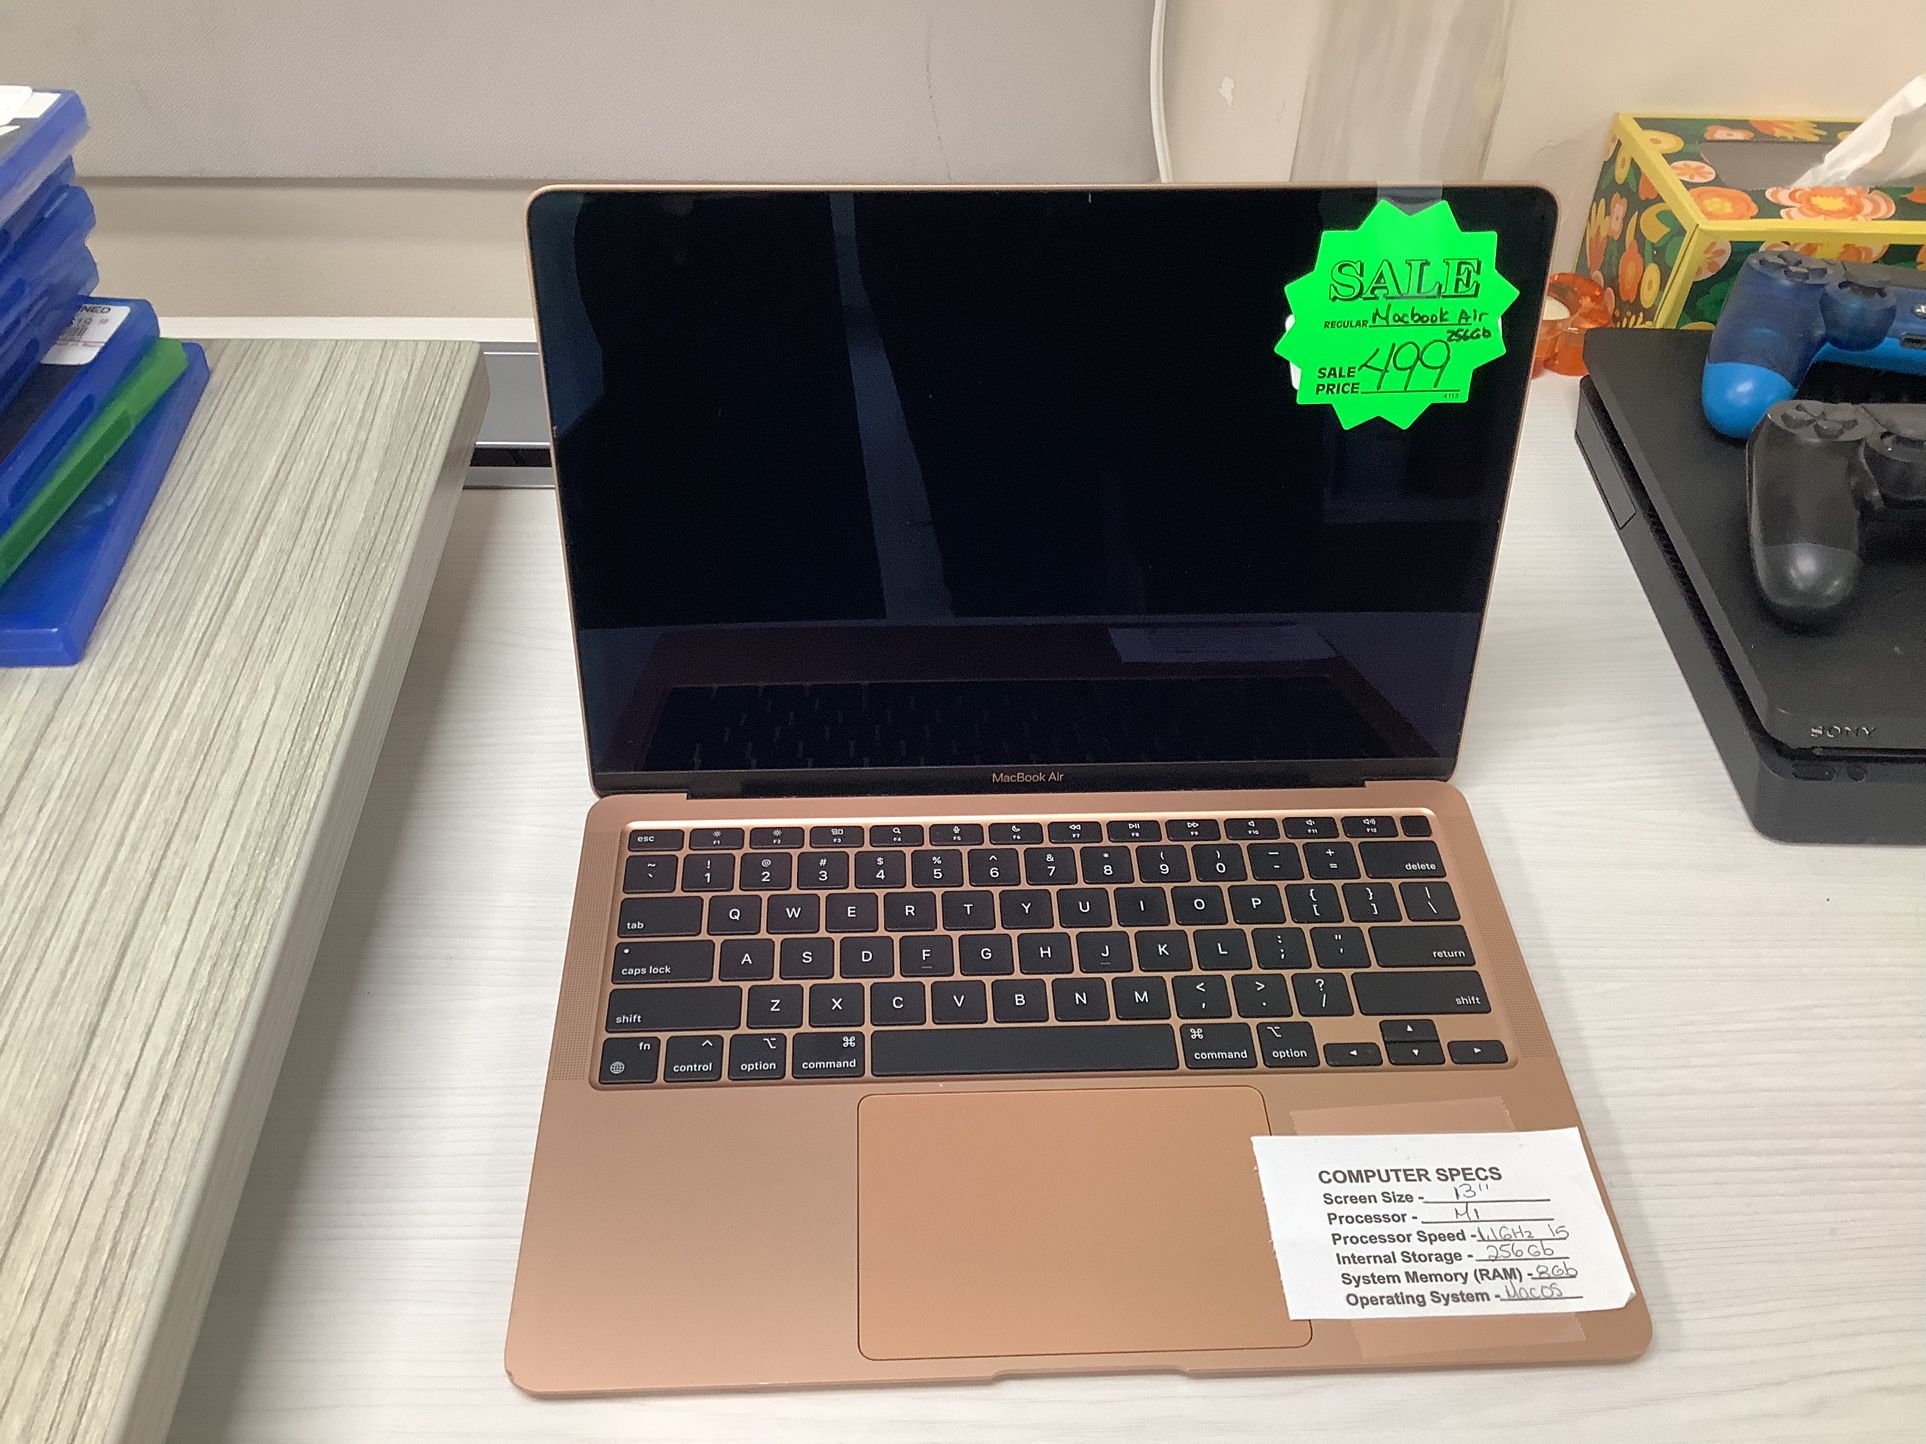 MacBook Air $499 (Rj Cash Pawnshop 2505 NW 183rd St)